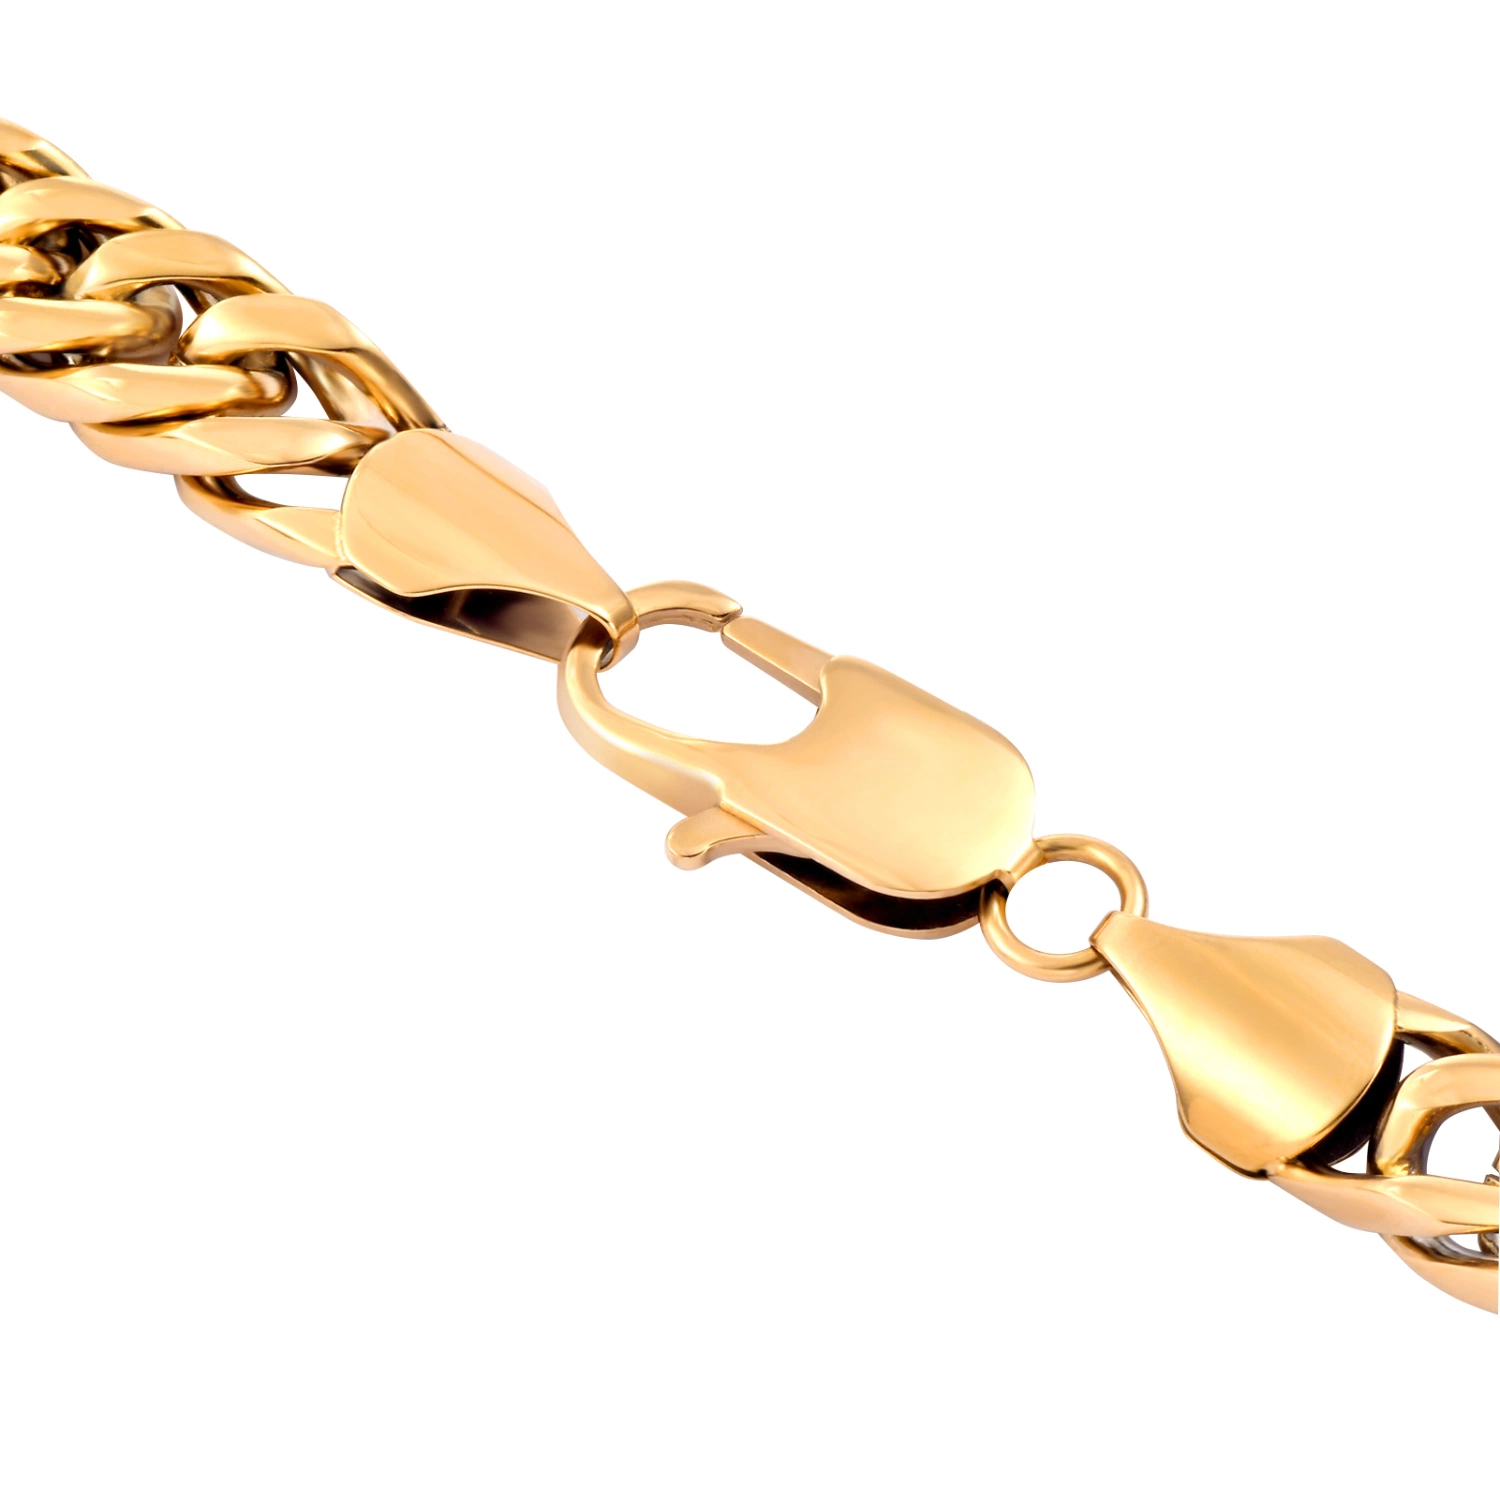 Colar de corrente cubana com espessura grossa para Hip Hop Men Lady Fashion Jewellery 14K Gold Plated